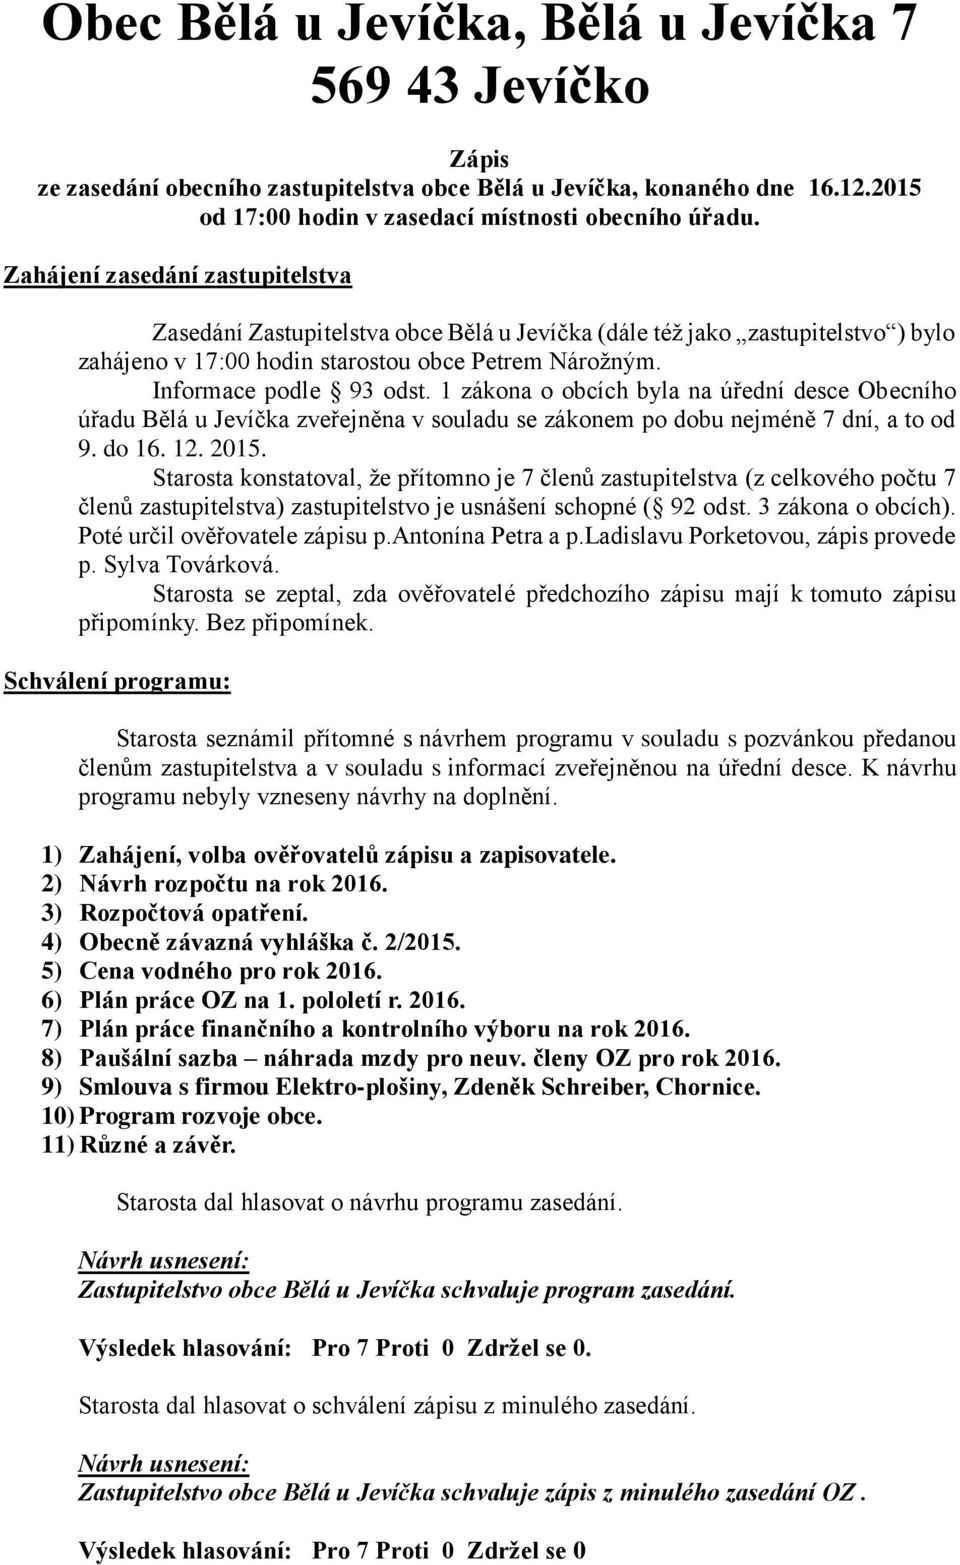 1 zákona o obcích byla na úřední desce Obecního úřadu Bělá u Jevíčka zveřejněna v souladu se zákonem po dobu nejméně 7 dní, a to od 9. do 16. 12. 2015.